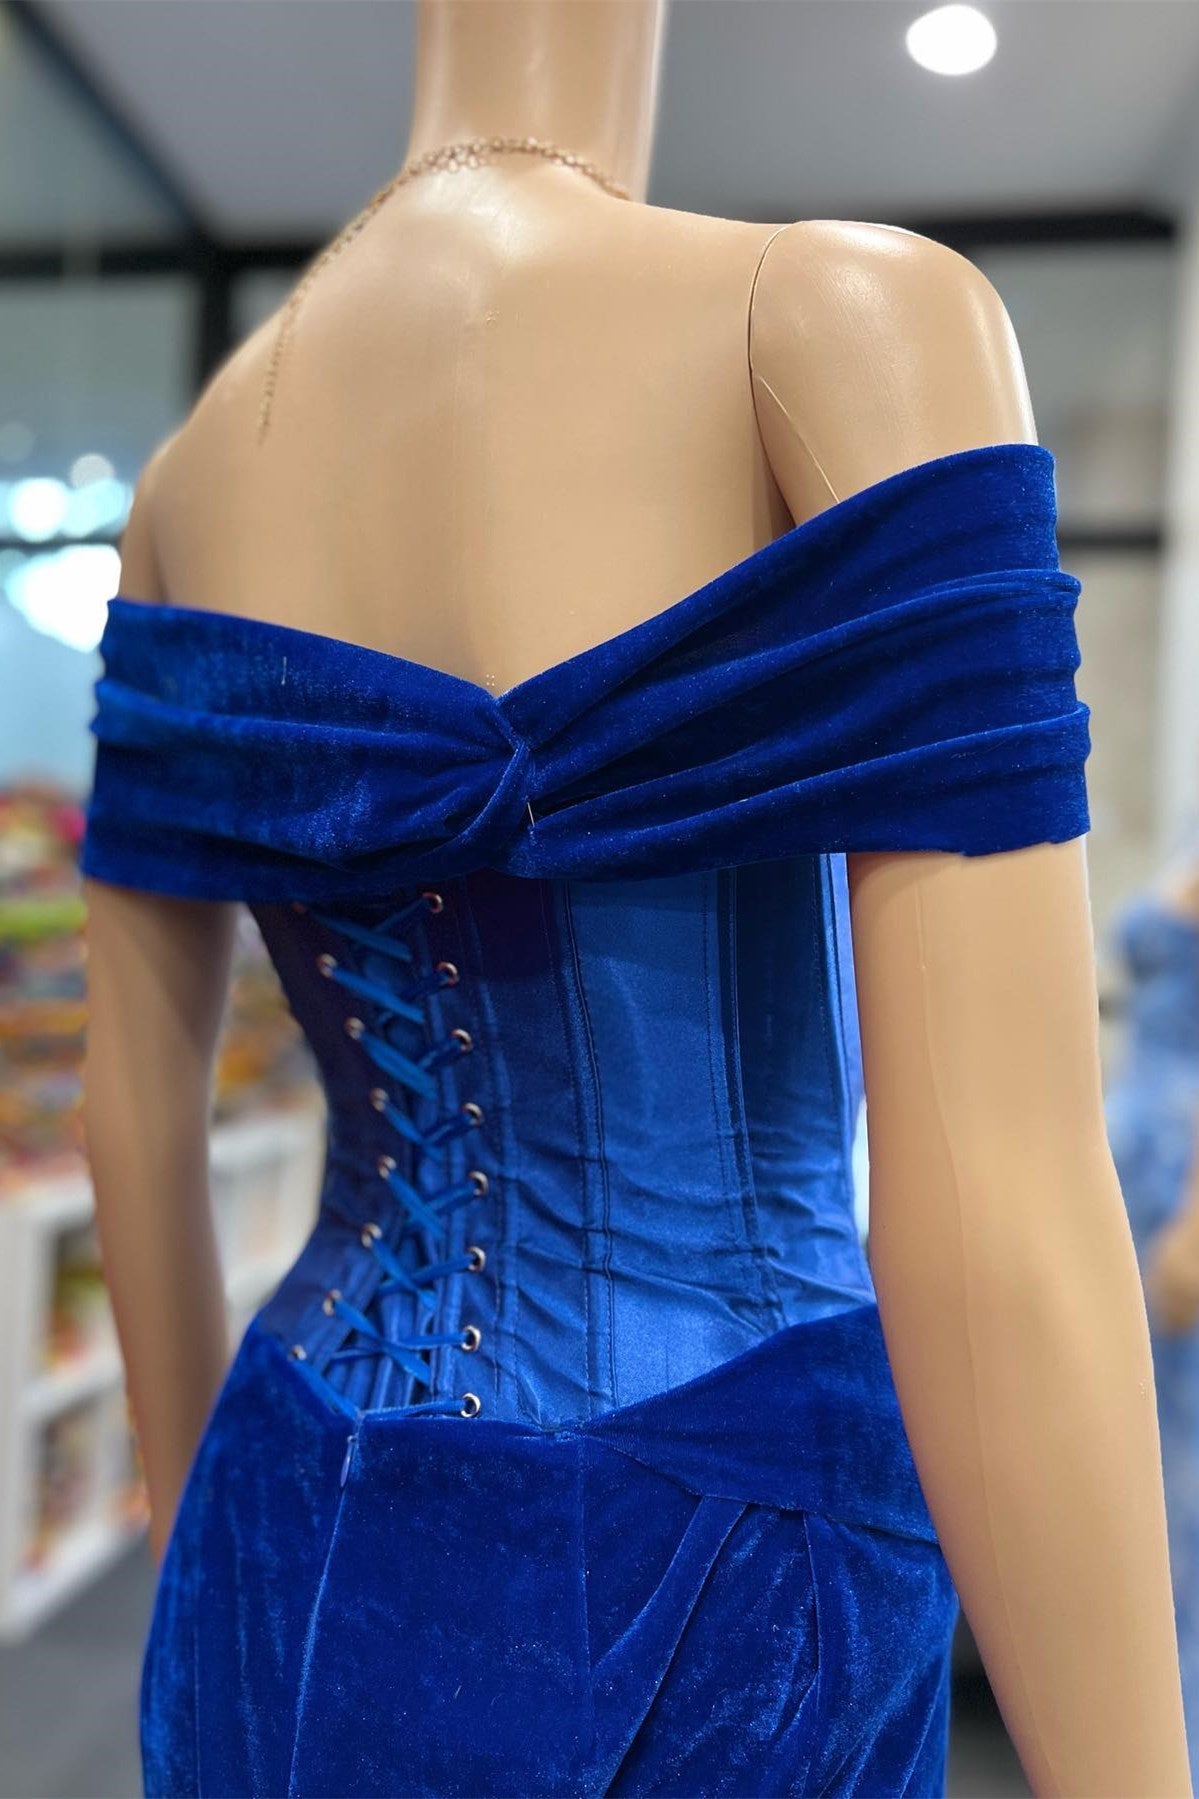 Royal Blue Velvet Off-the-Shoulder Twist-Knot Sheath Formal Gown